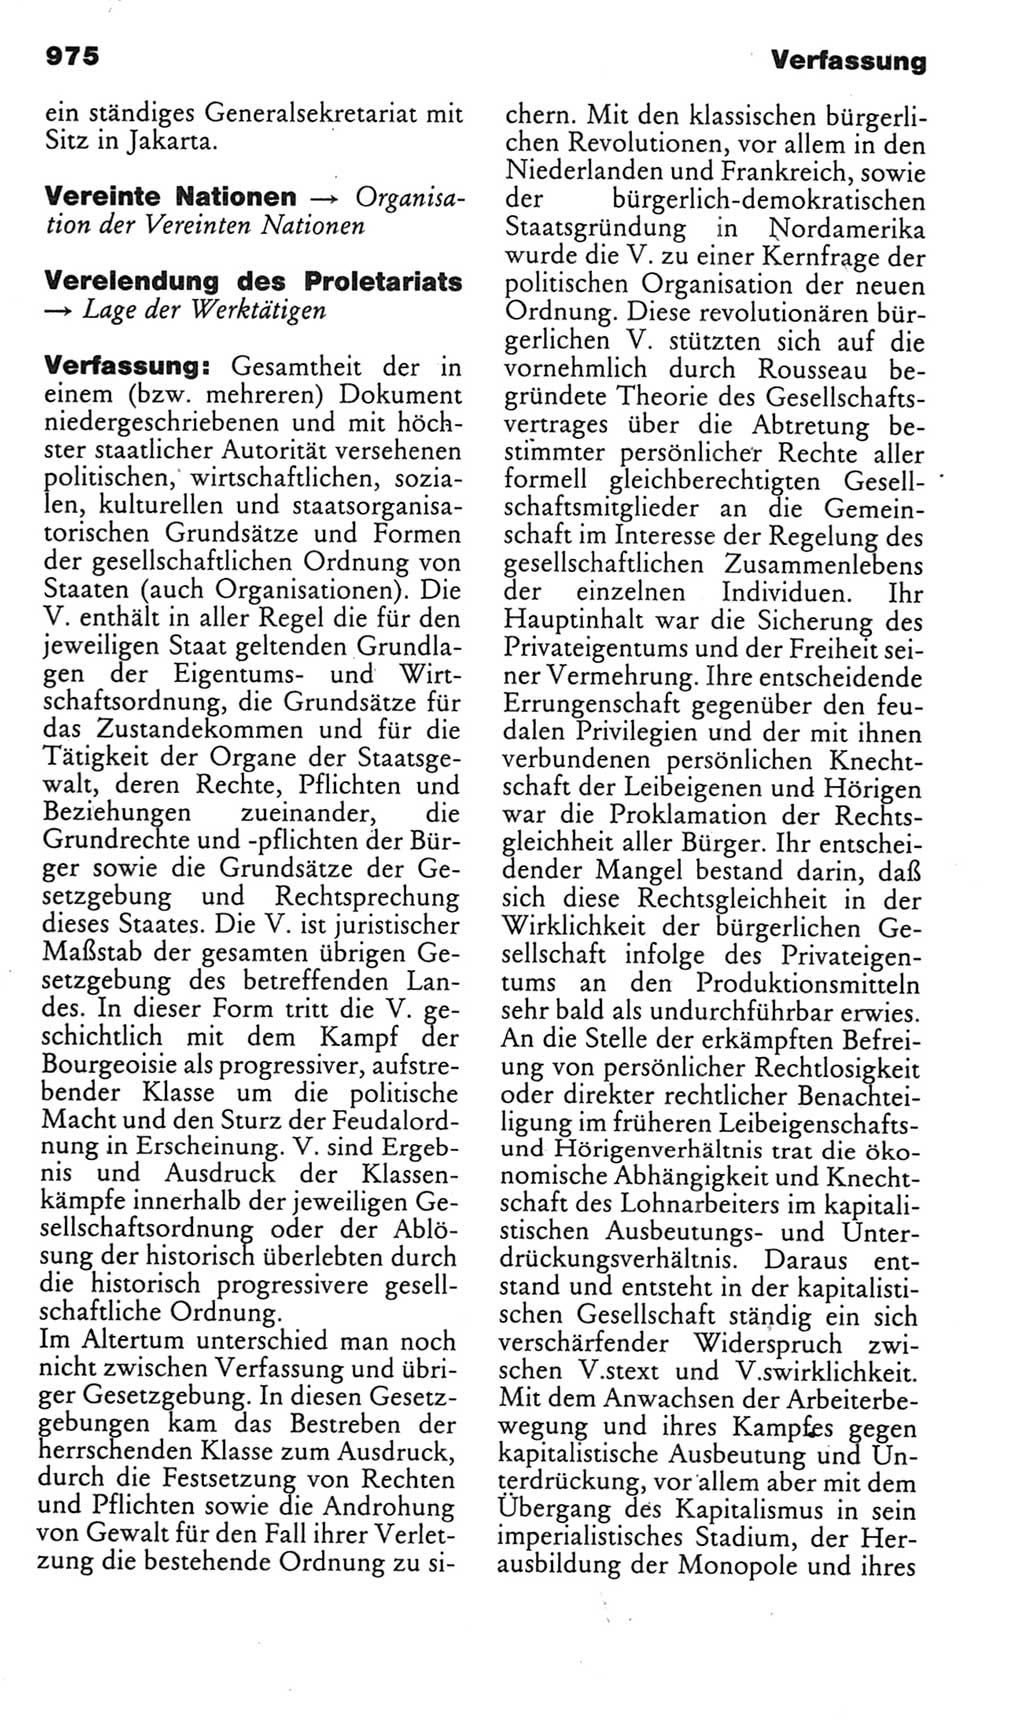 Kleines politisches Wörterbuch [Deutsche Demokratische Republik (DDR)] 1985, Seite 975 (Kl. pol. Wb. DDR 1985, S. 975)